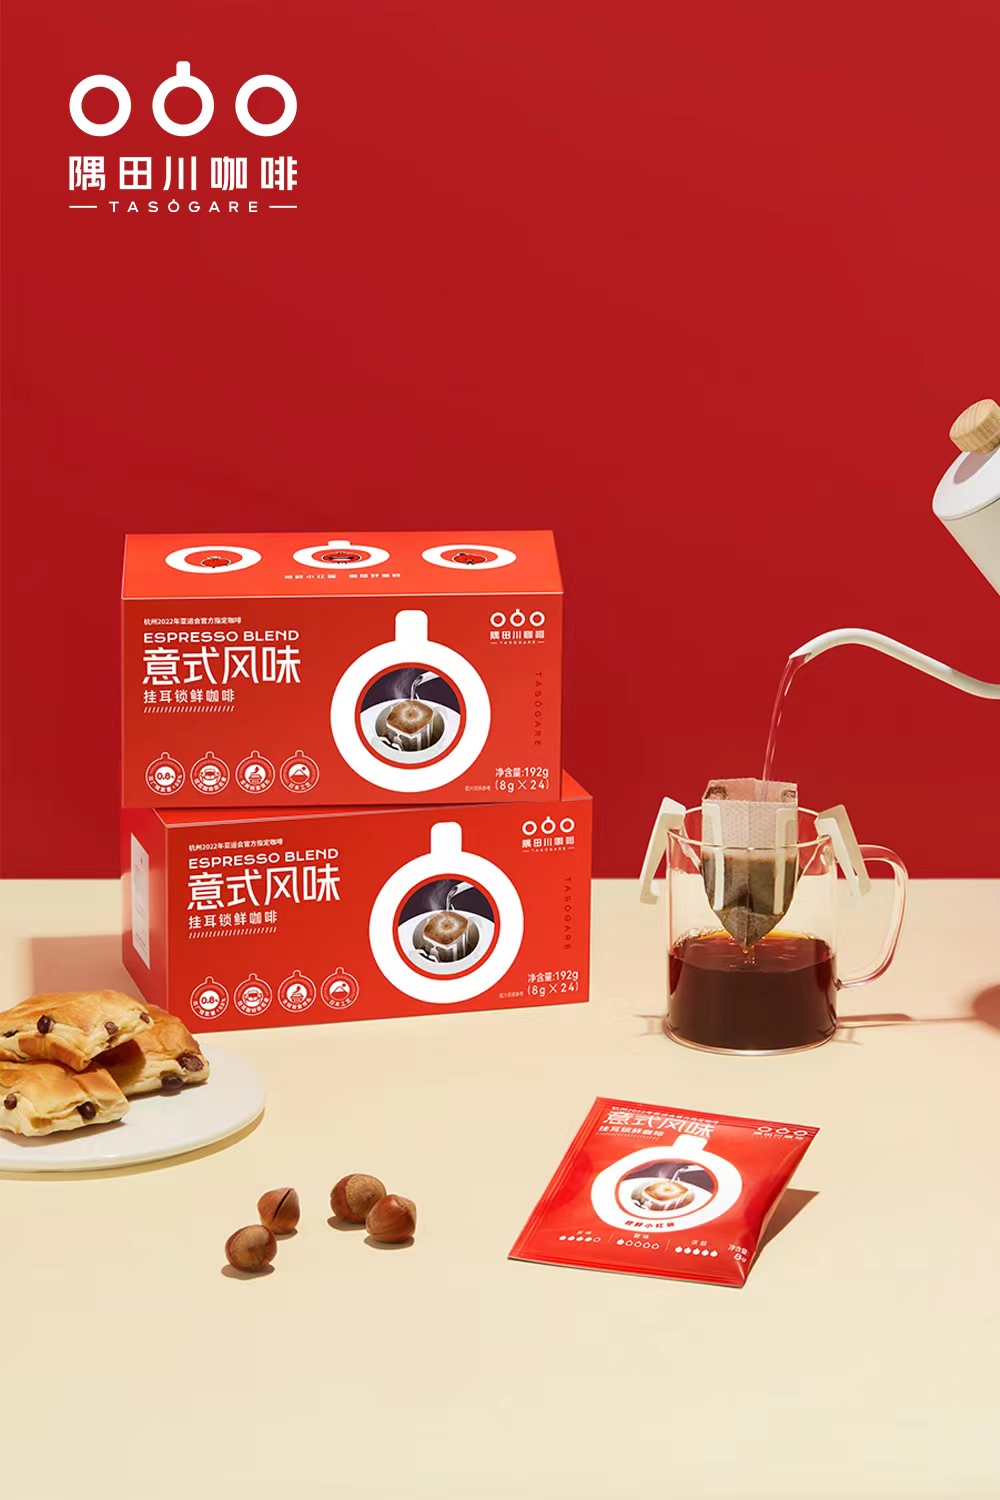 零售咖啡品牌「隅田川咖啡」获数亿元C轮融资